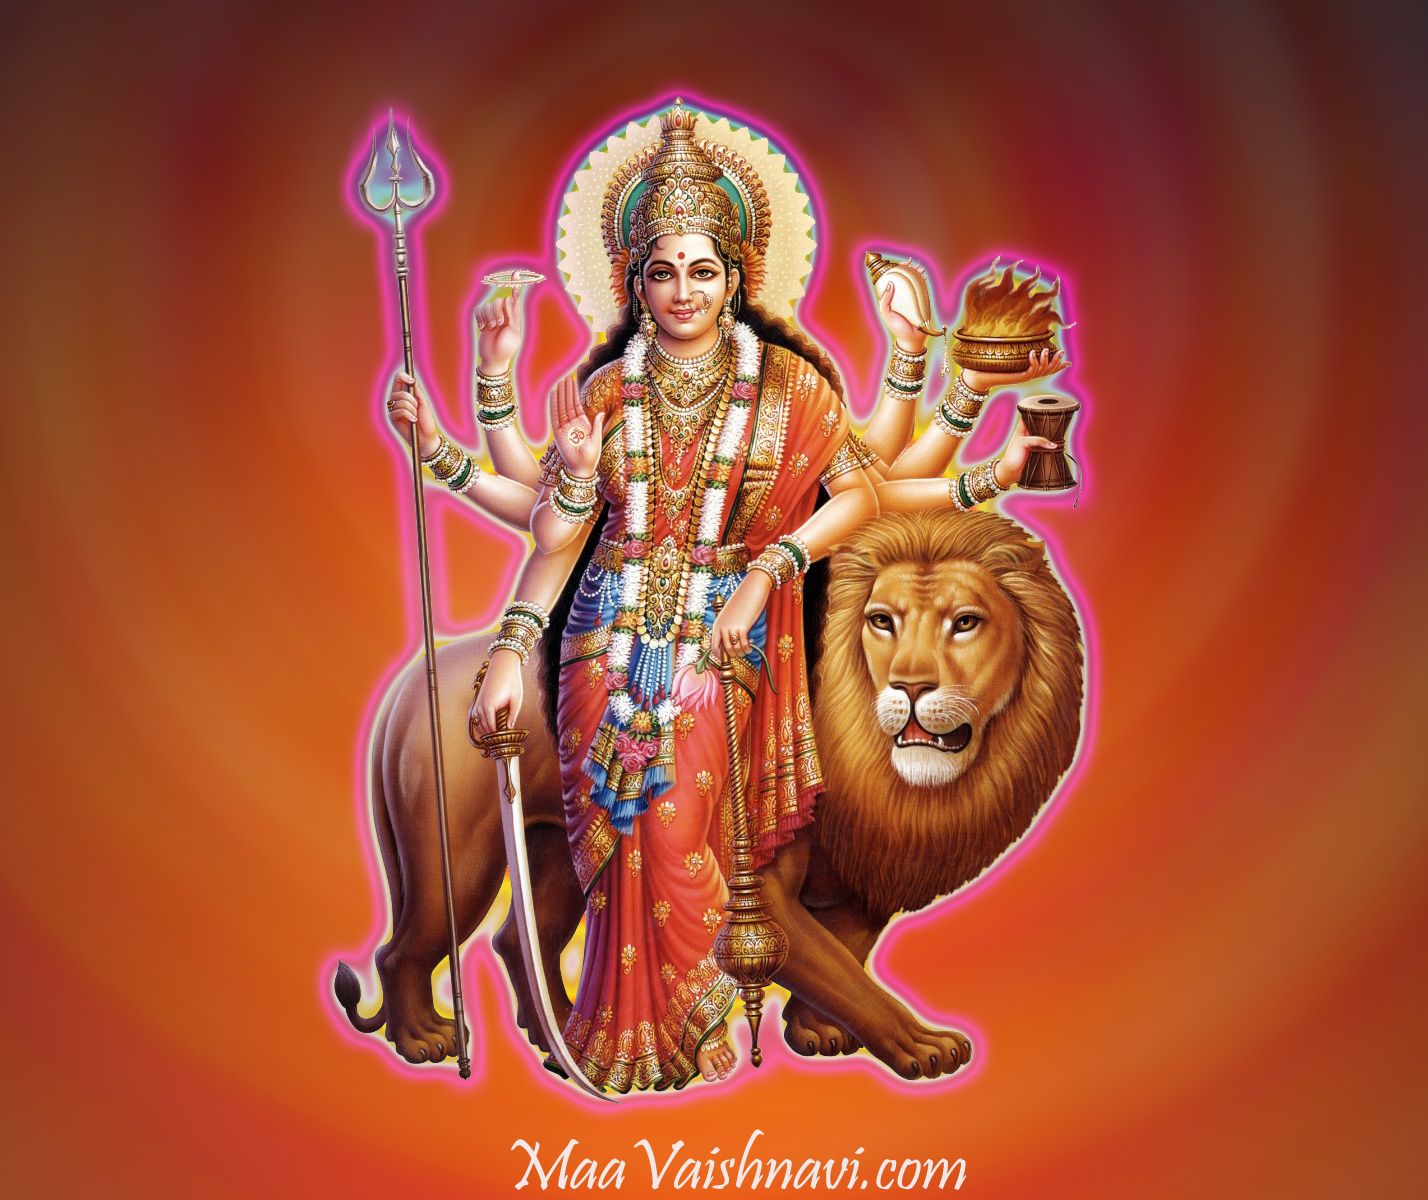 Jai Mata Di Godess Durga Maa Image 3D